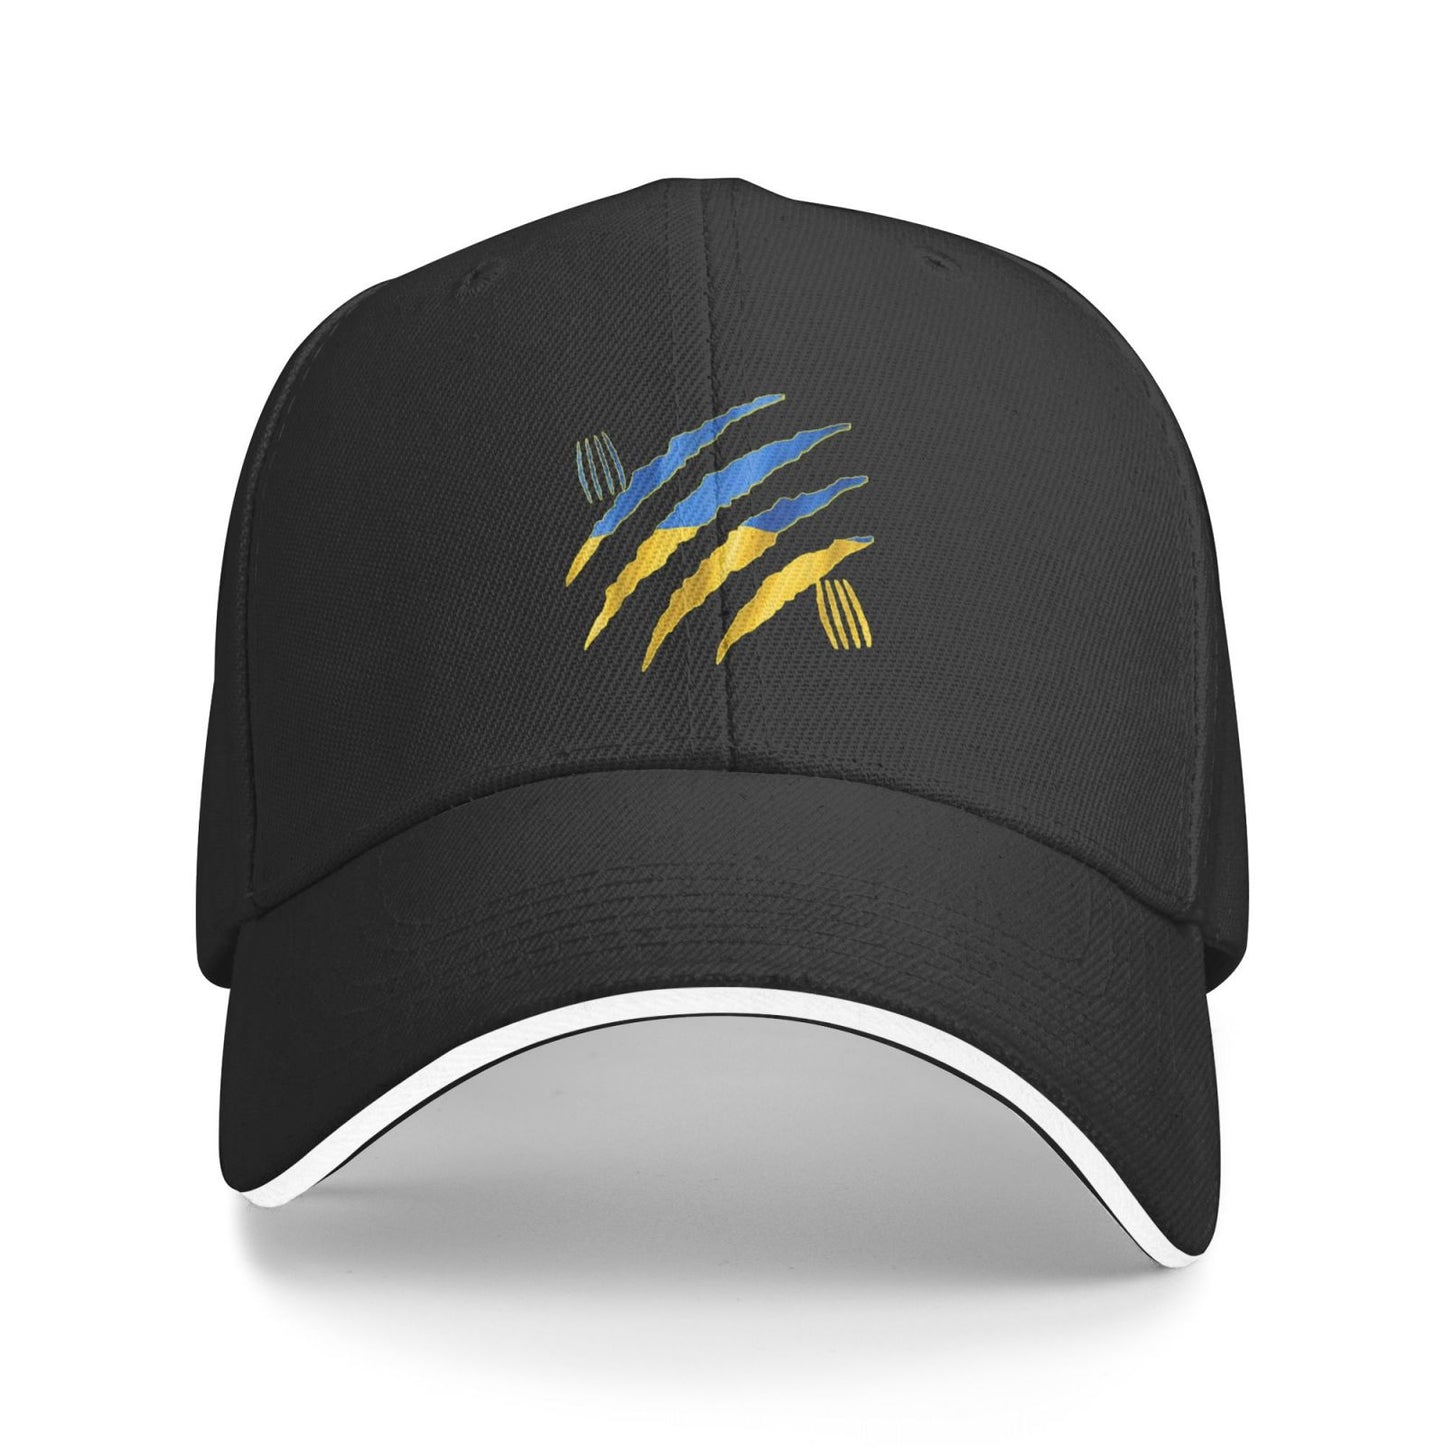 Ukraine Flag Unisex Hats Fashion Adjustable Baseball Cap for Men Women